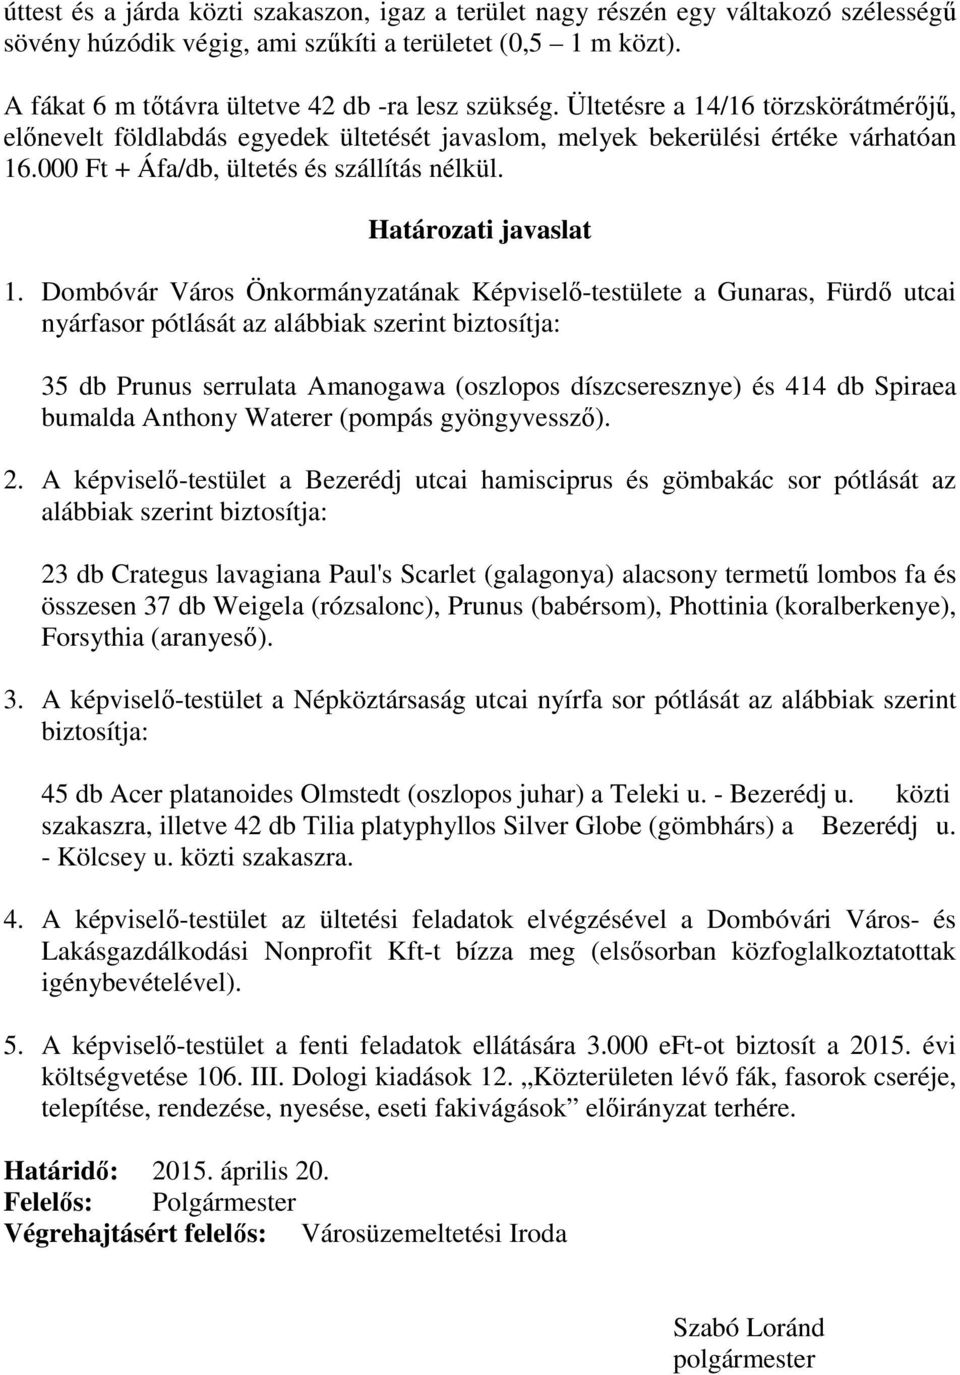 Dombóvár Város Önkormányzatának Képviselő-testülete a Gunaras, Fürdő utcai nyárfasor pótlását az alábbiak szerint biztosítja: 35 db Prunus serrulata Amanogawa (oszlopos díszcseresznye) és 414 db